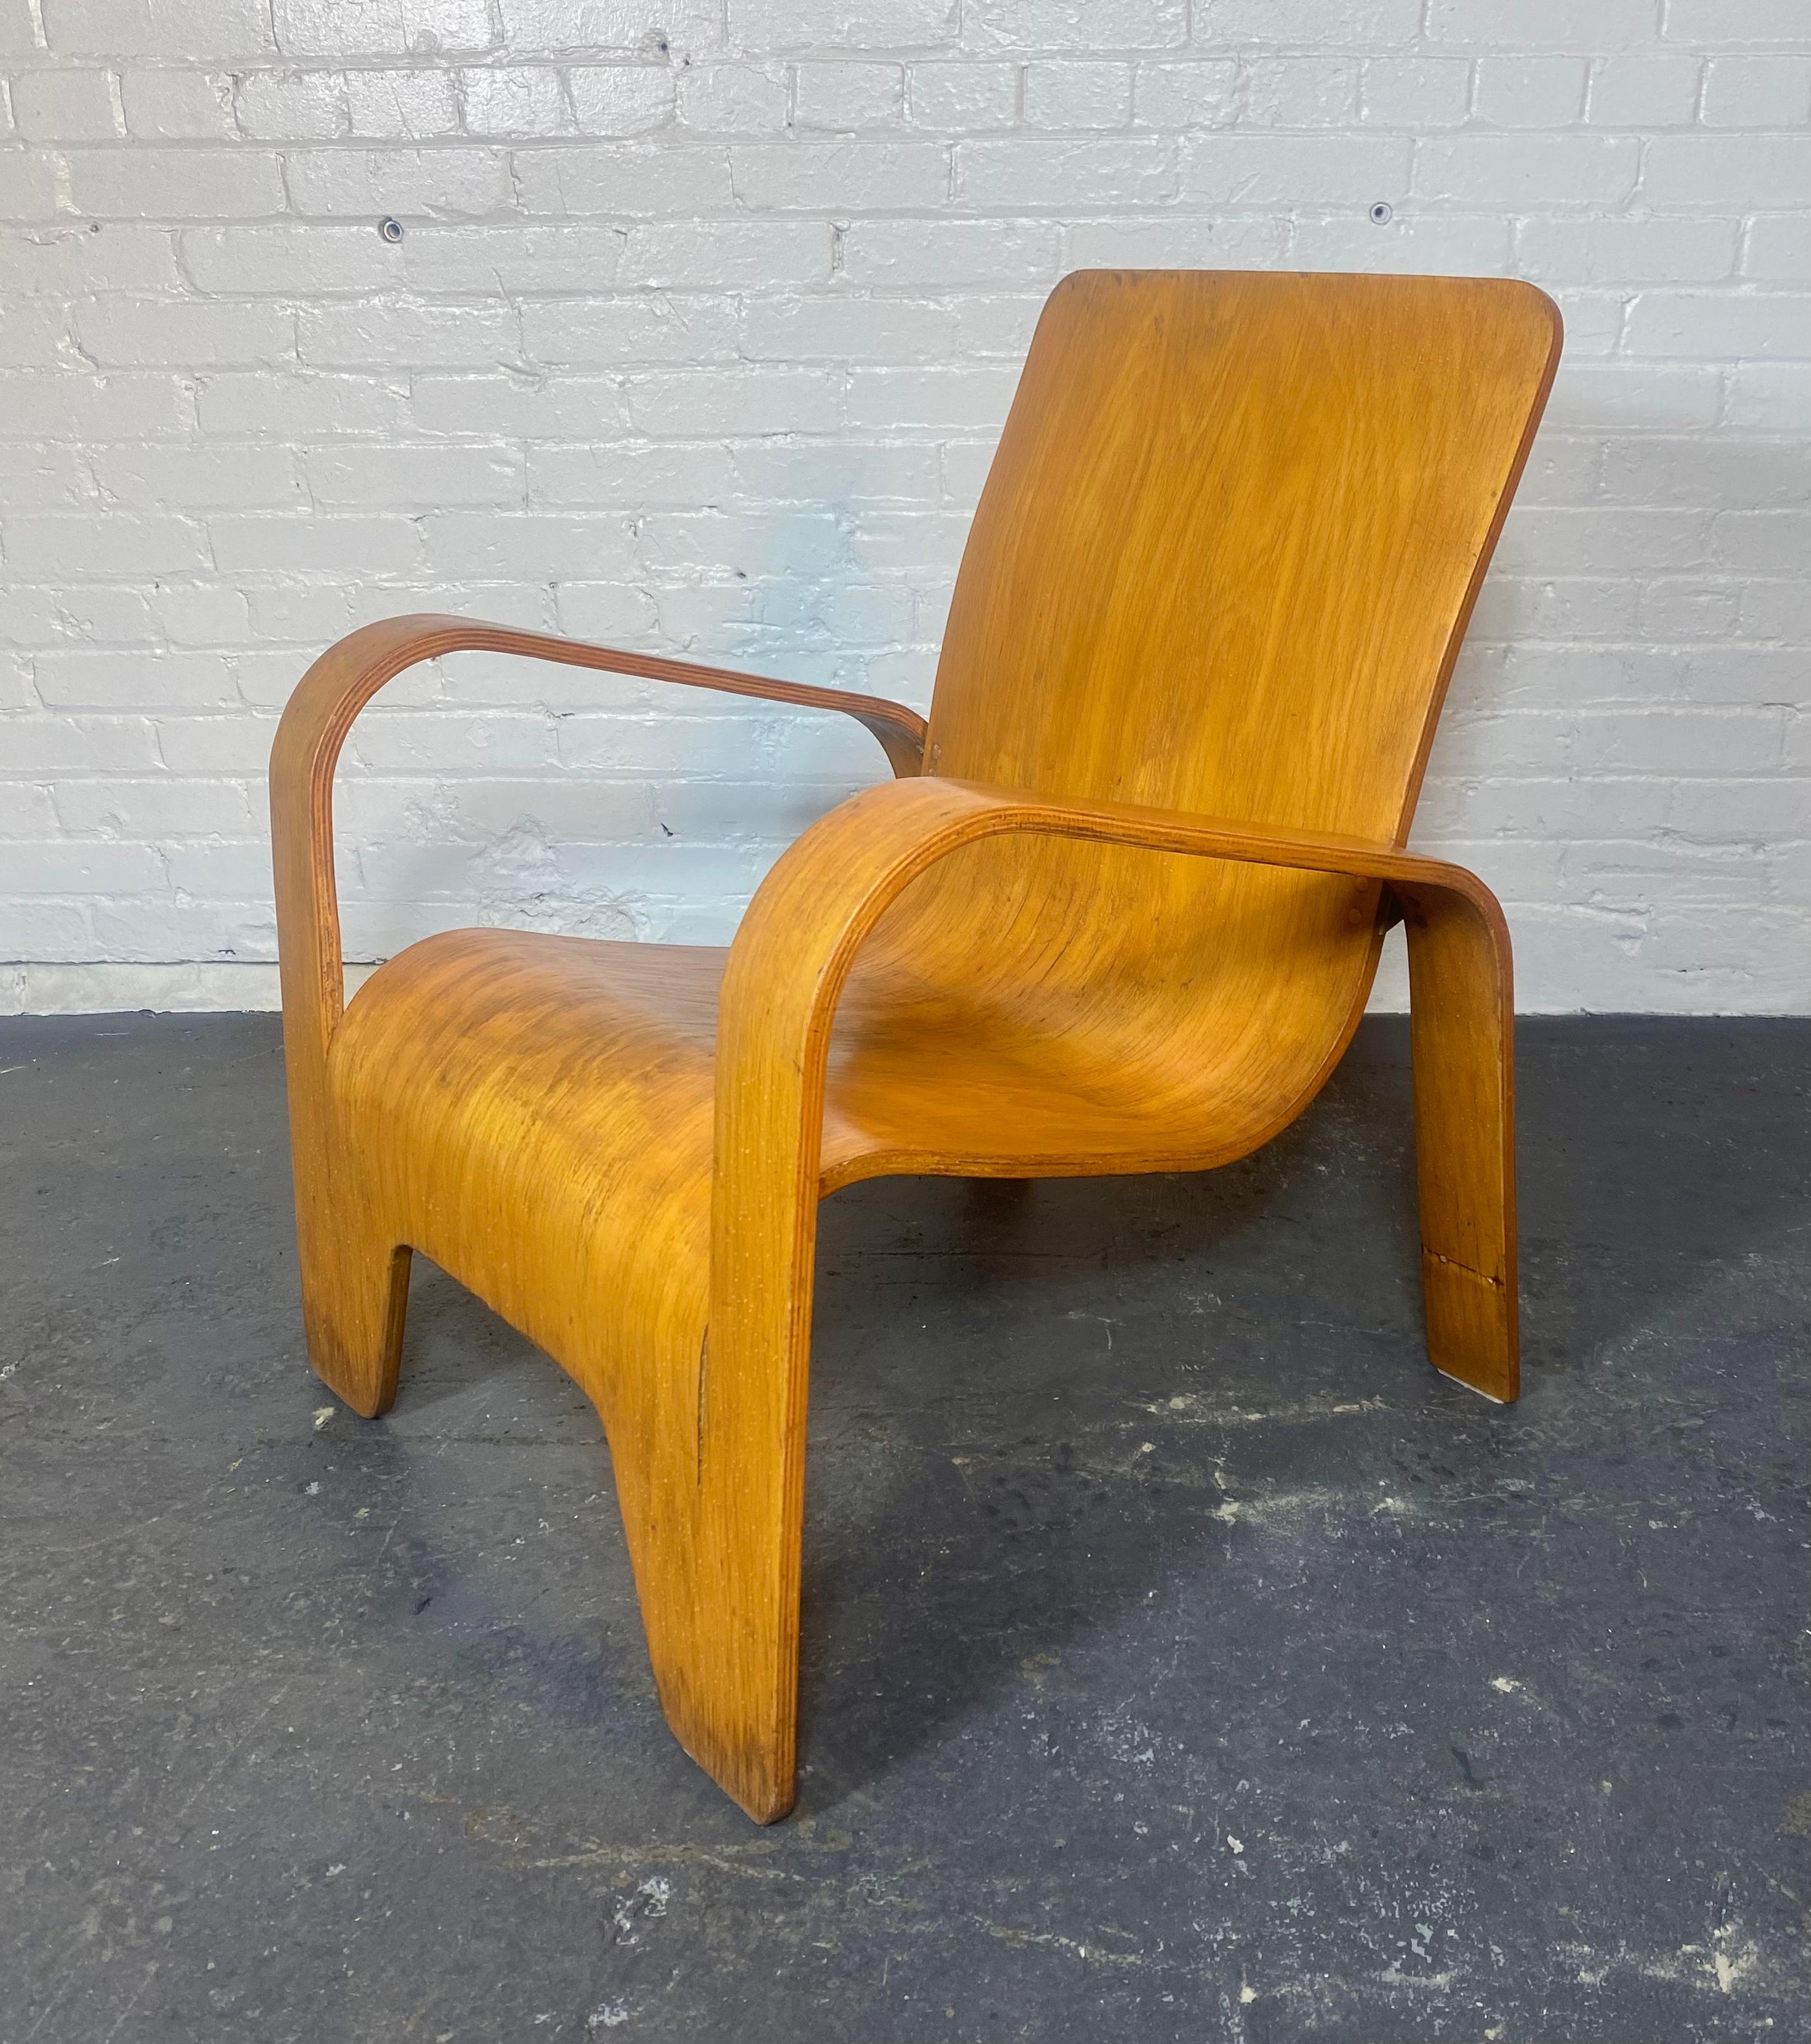 Seltener LaWo1 Lounge Chair aus Holz von Han Pieck für Lawo Ommen, Niederlande. Dieser seltene niederländisch-moderne Stuhl ist brillant gestaltet und aus mehreren Schichten Birkensperrholz gefertigt. Die Hinterbeine sind mit Messingklammern an der